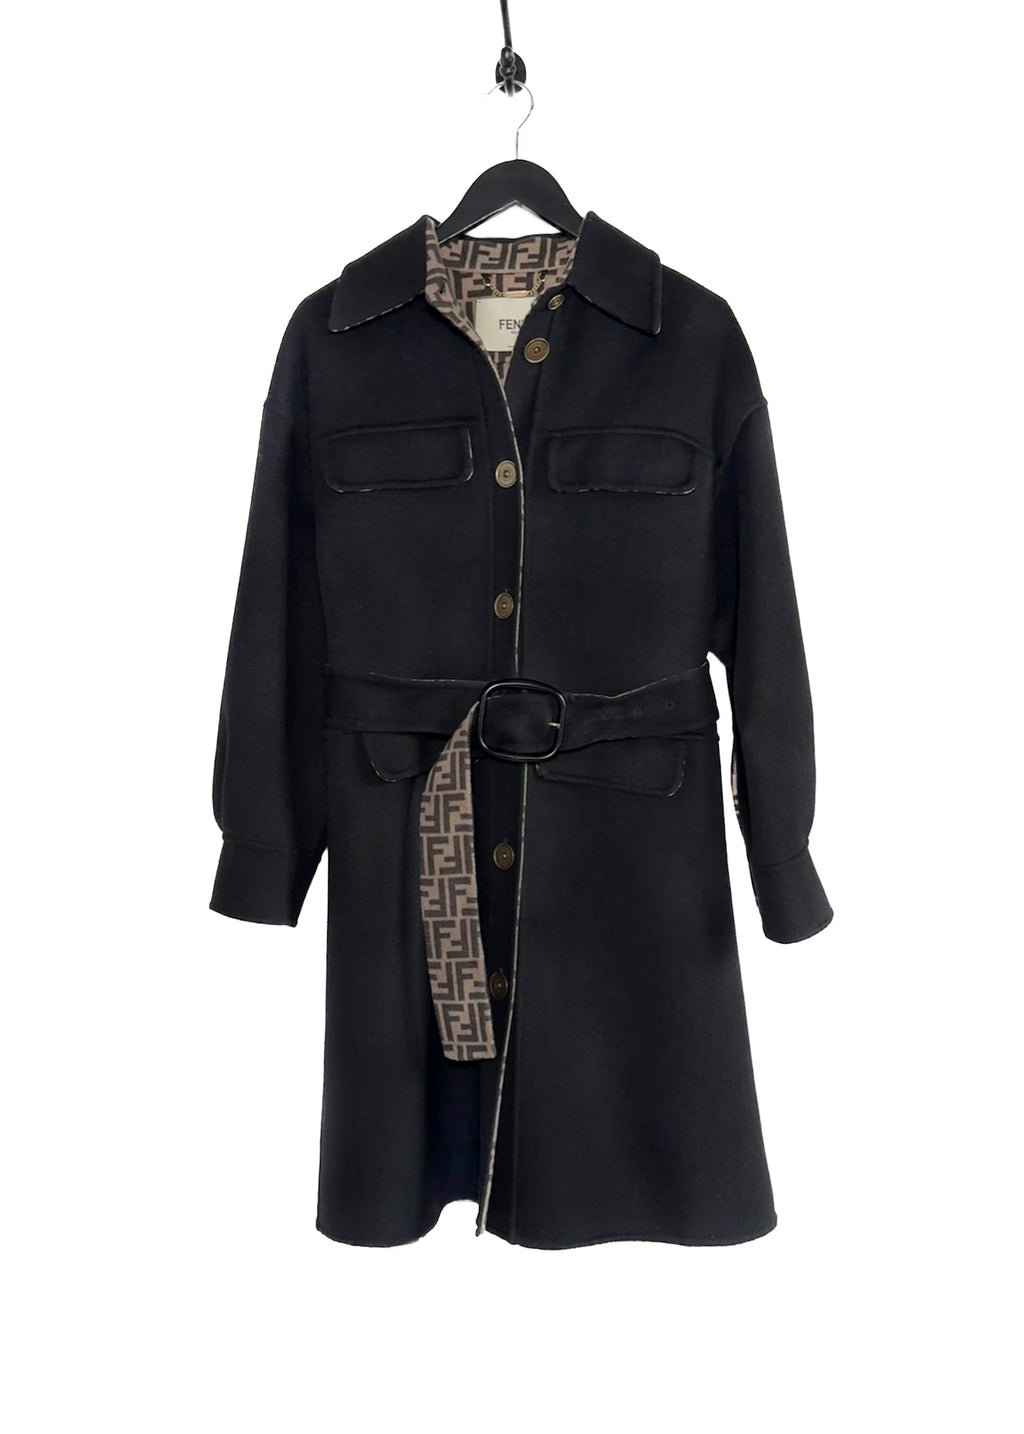 Manteau surdimensionné en laine noire Fendi ceinturé avec interieur Zucca